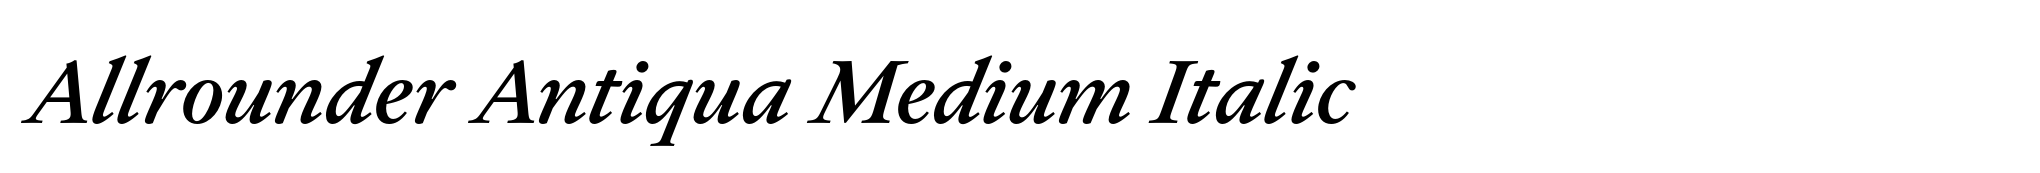 Allrounder Antiqua Medium Italic image